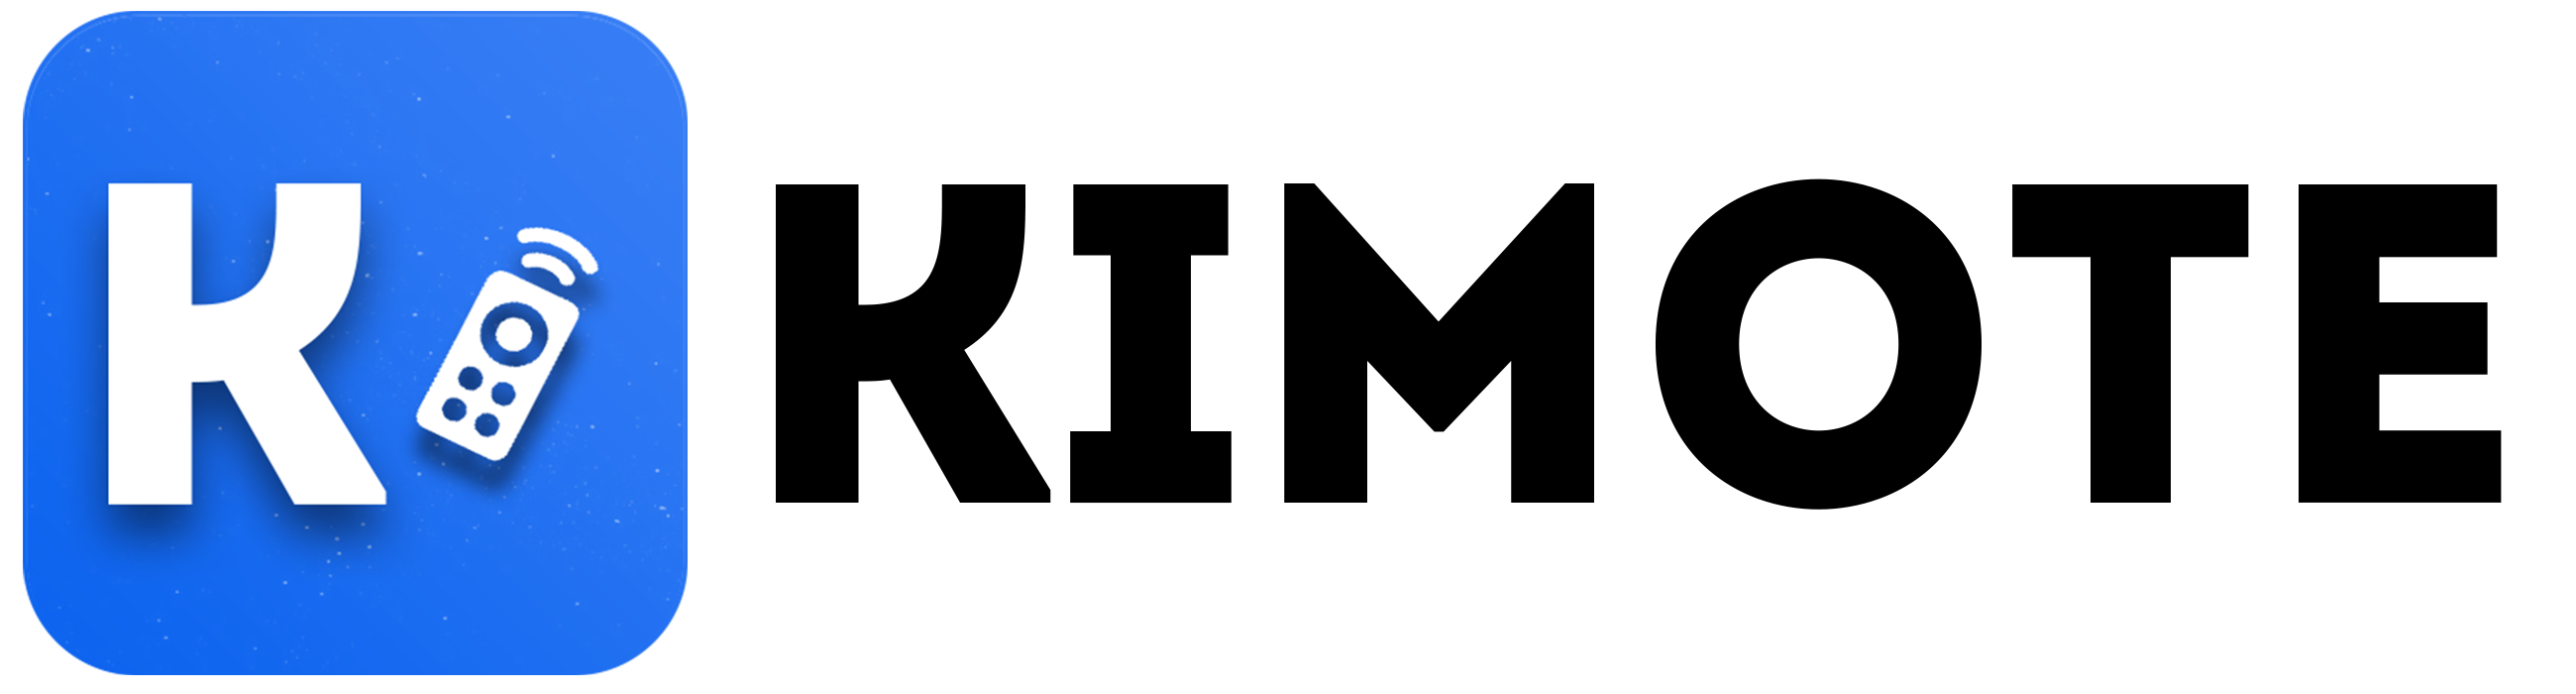 Kimote logo.png